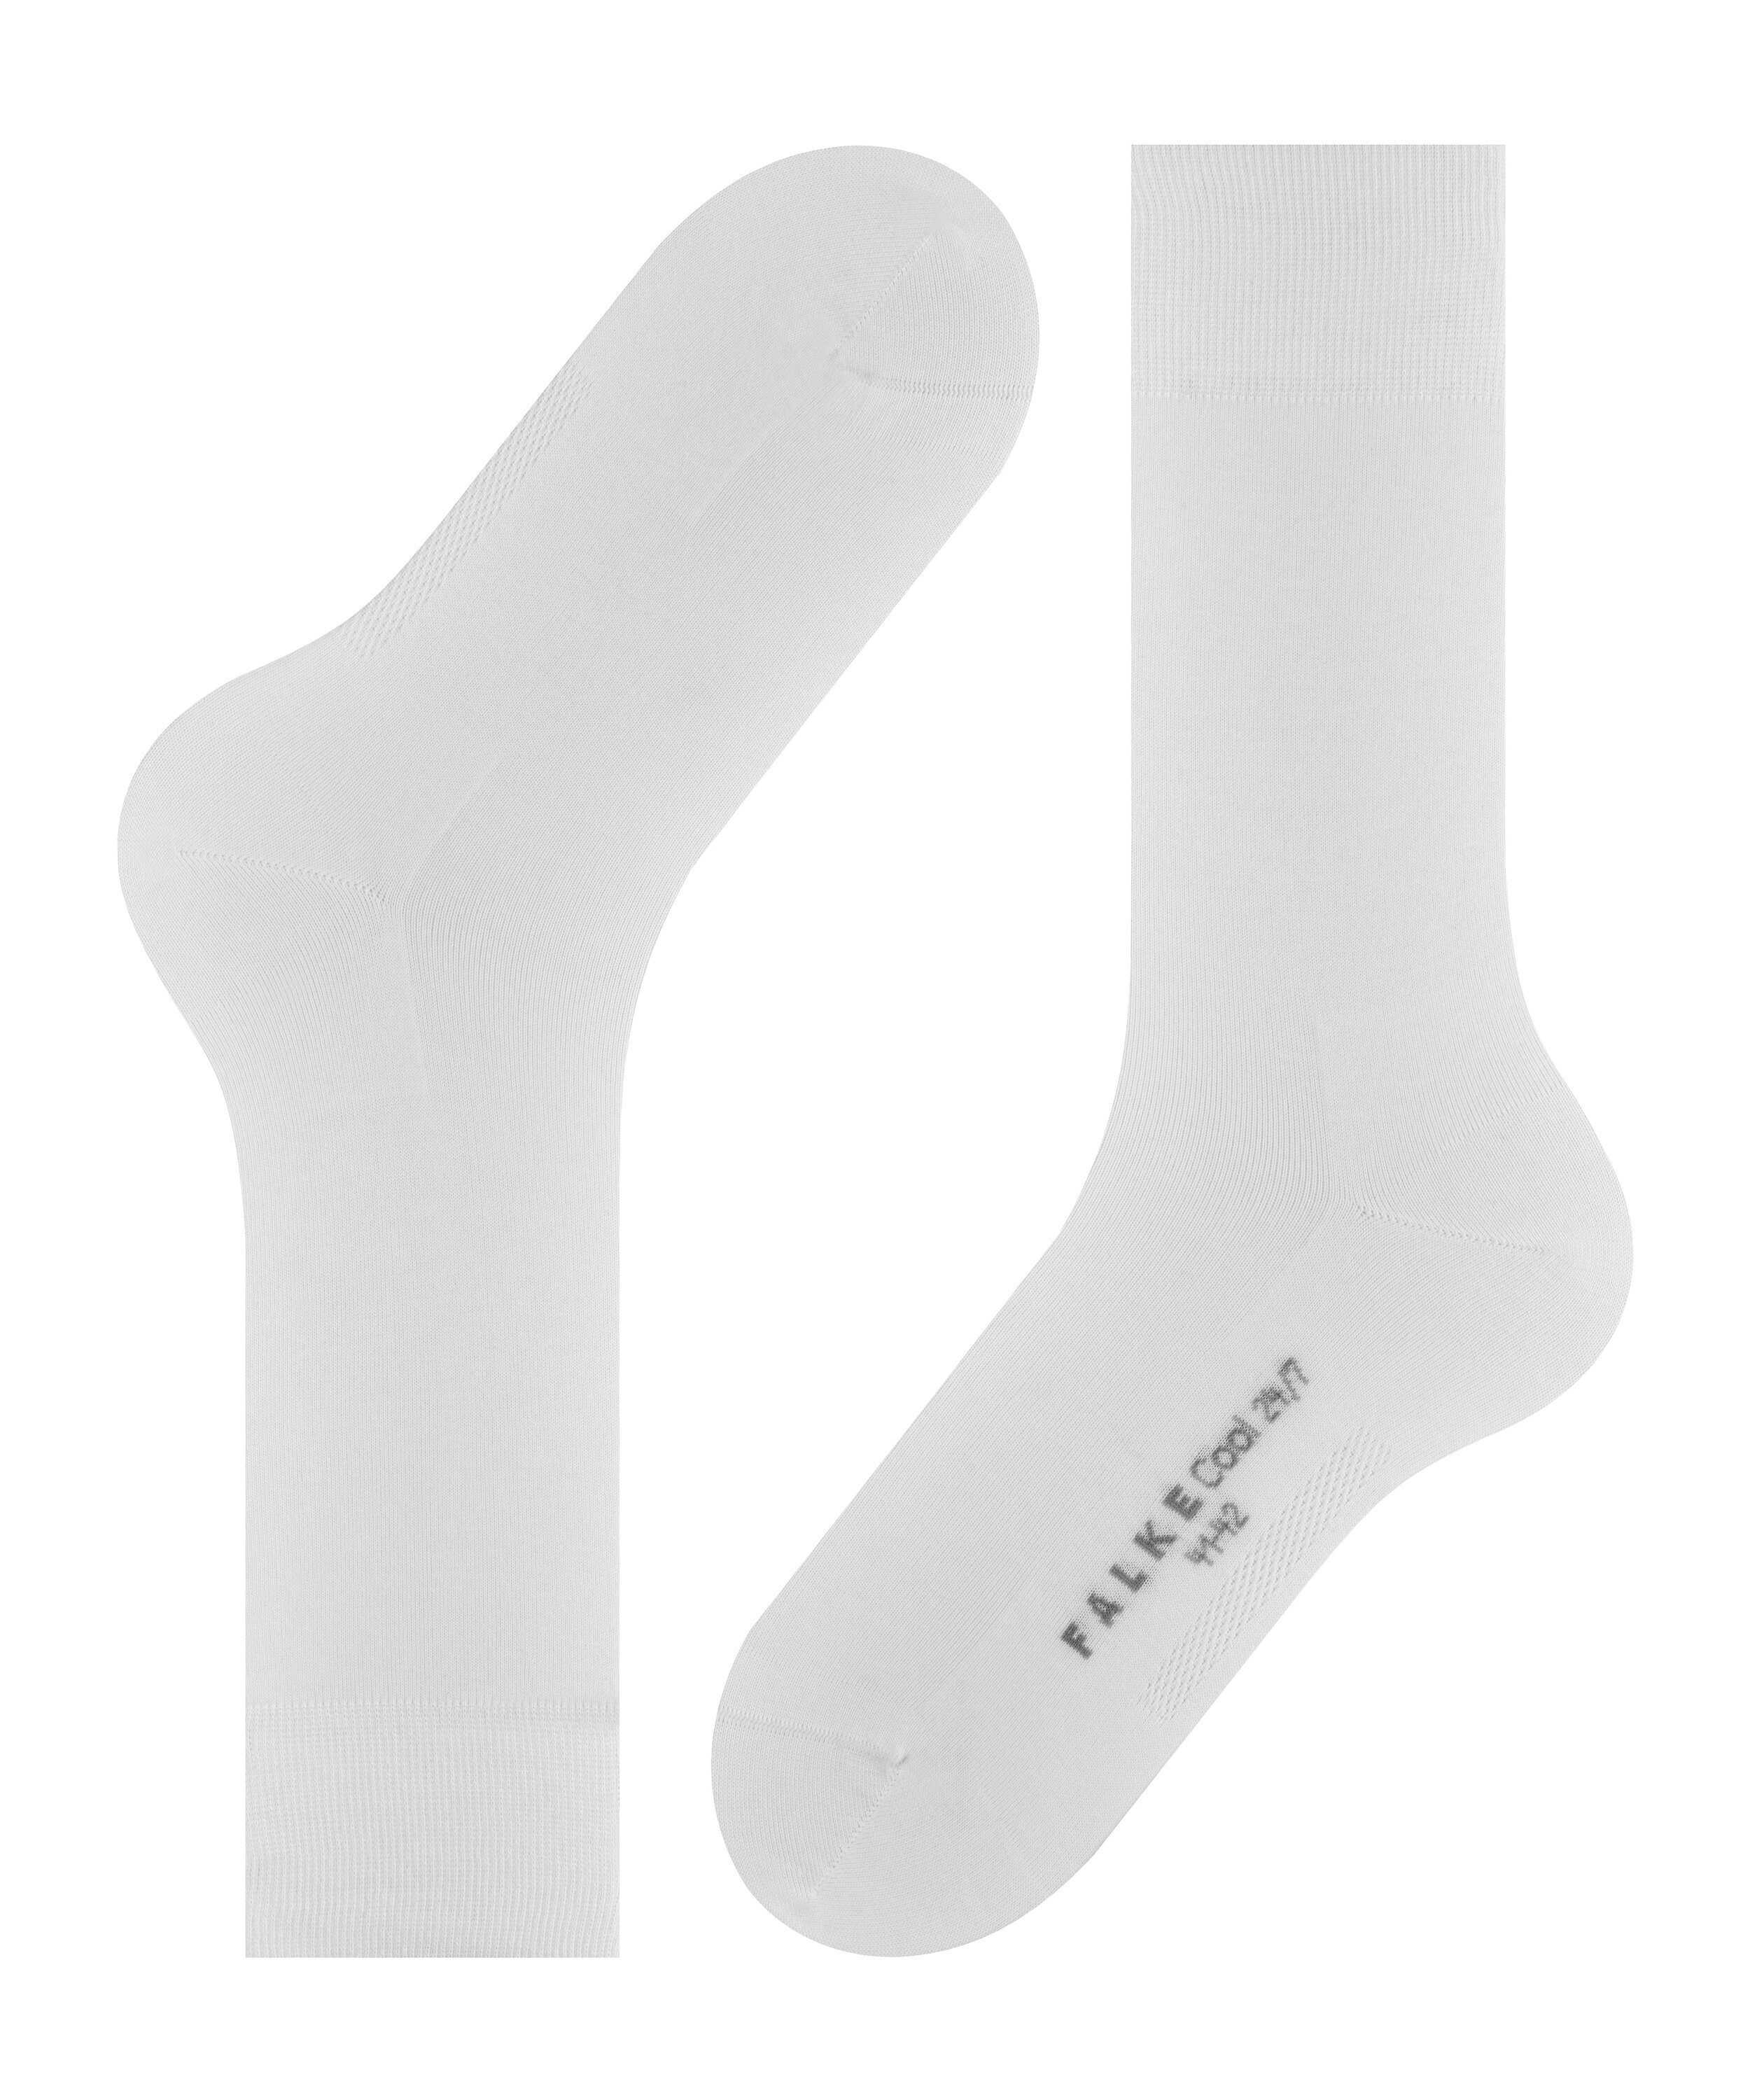 FALKE Socken Cool white 24/7 (2000) (1-Paar)